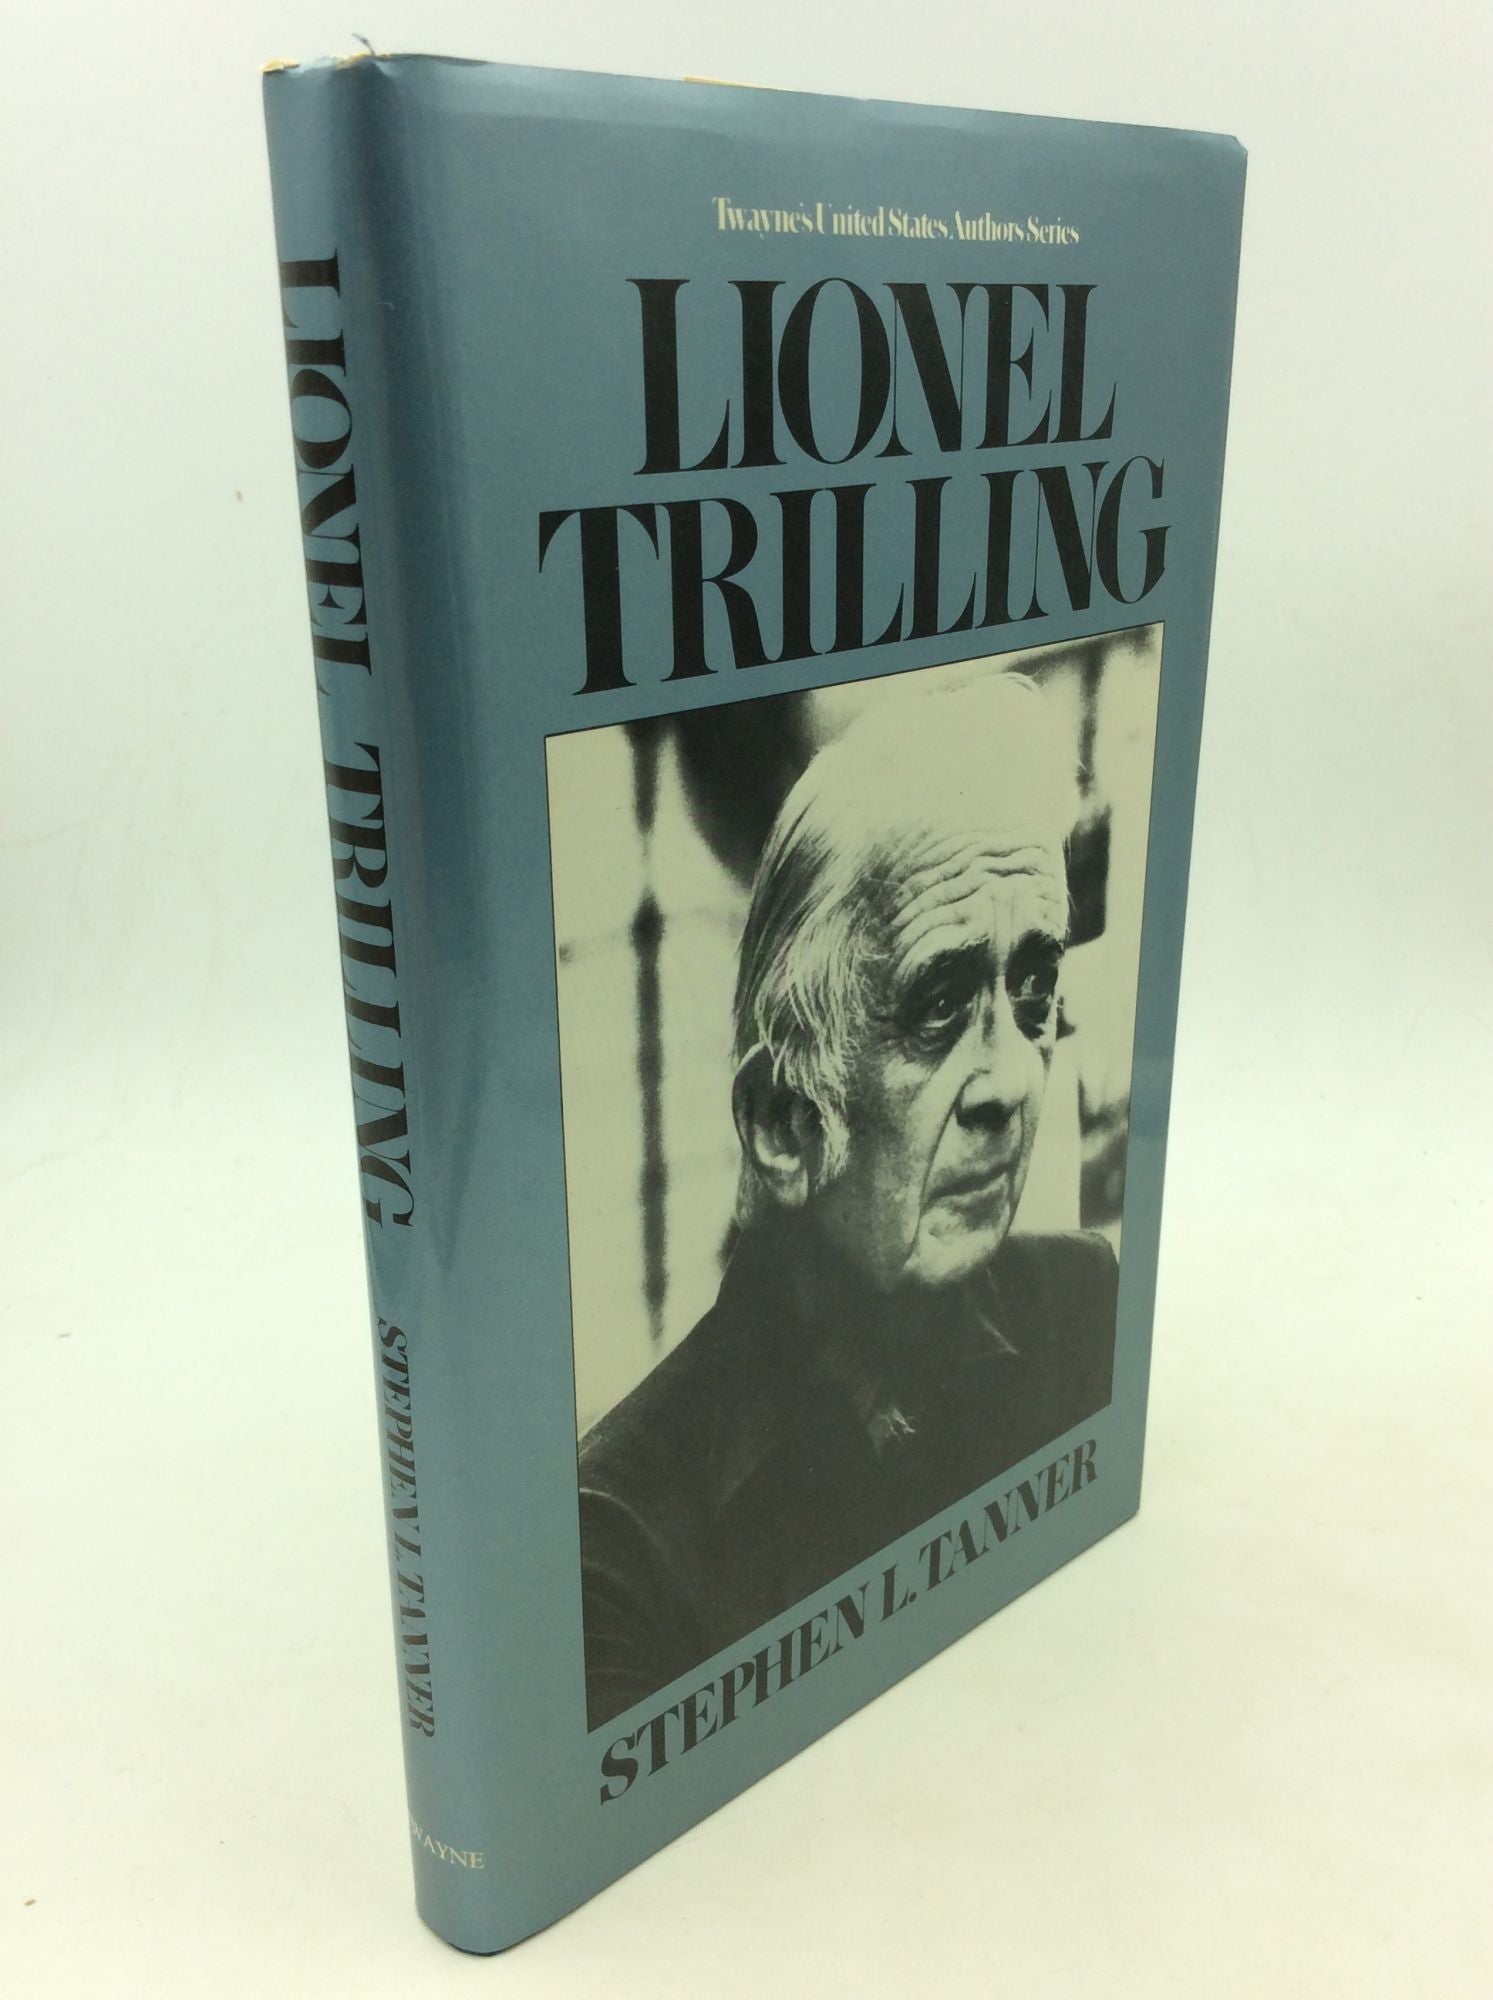 Stephen L. Tanner - Lionel Trilling